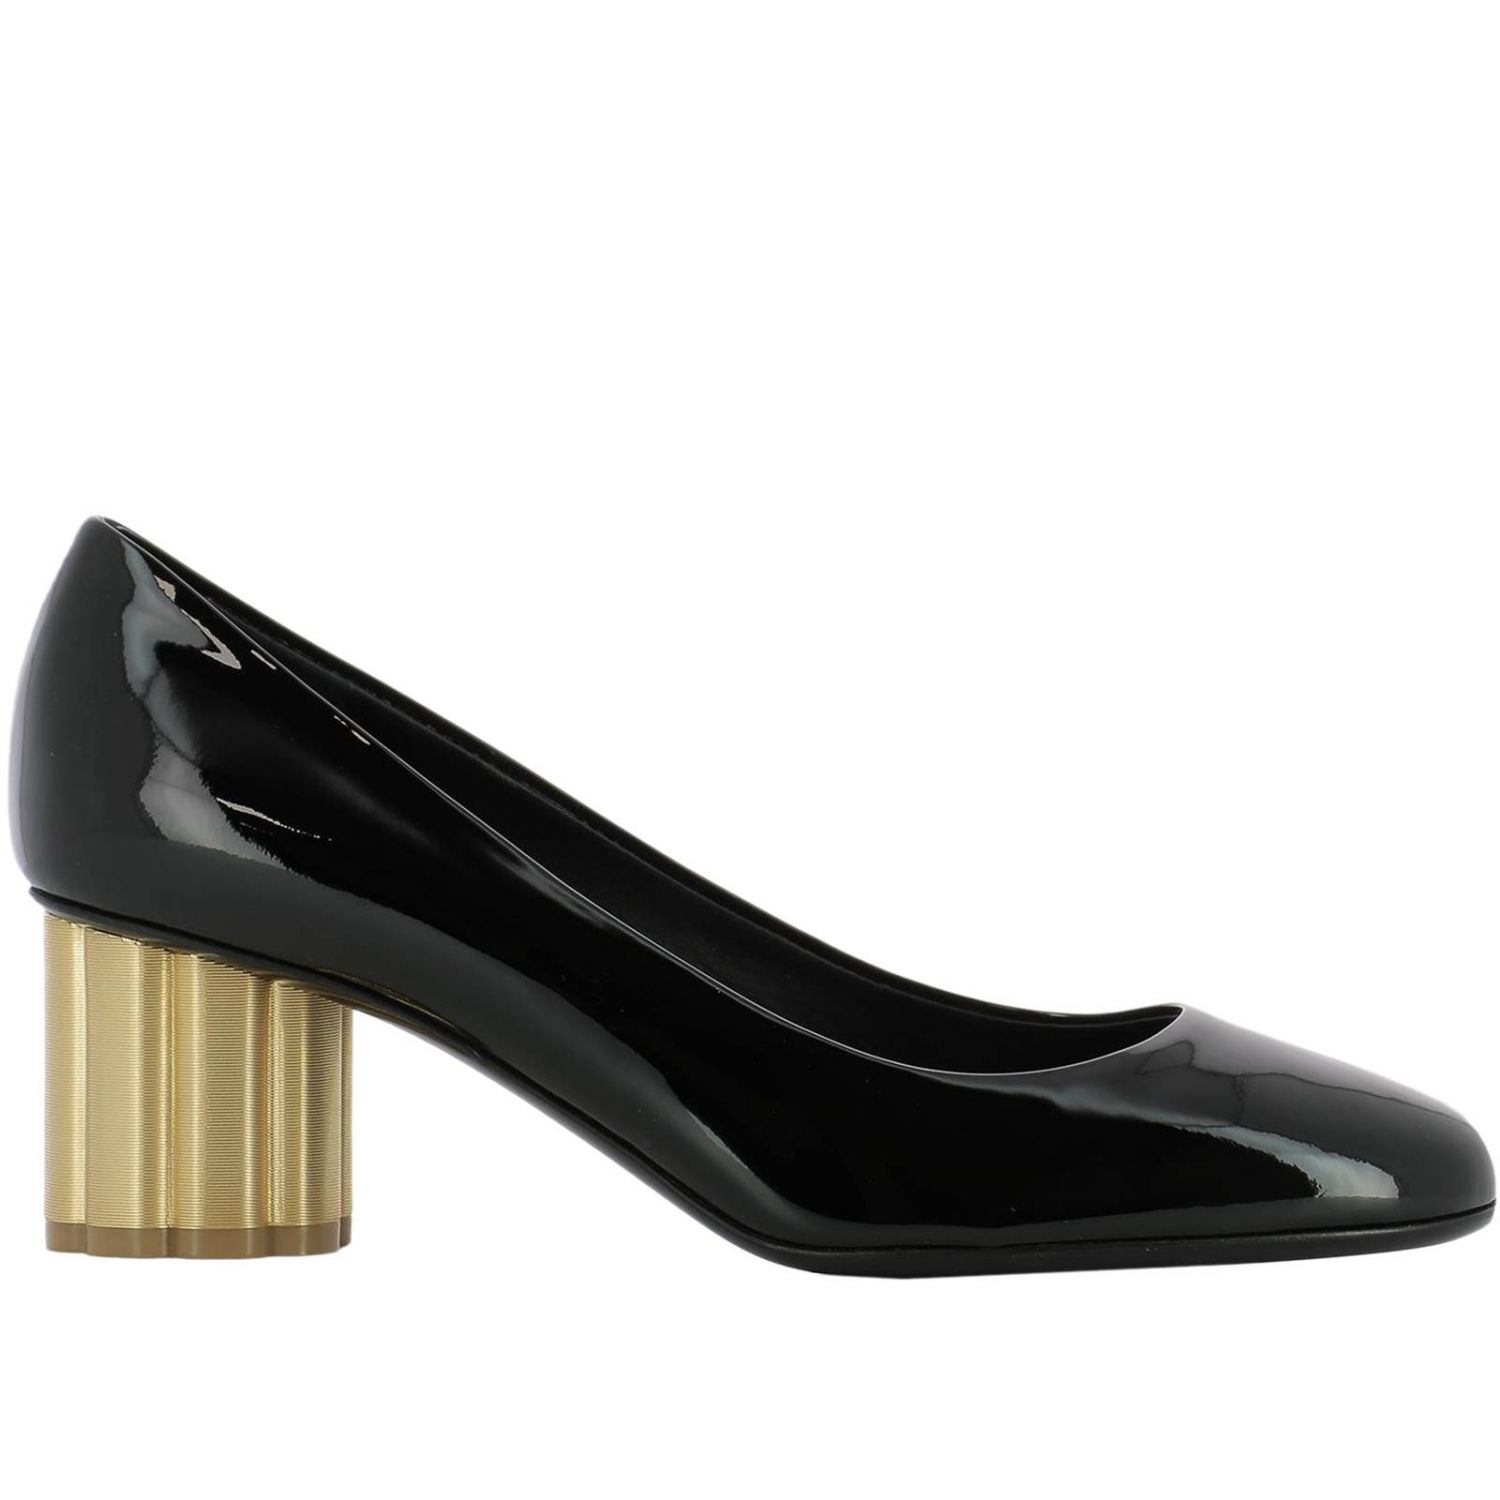 Salvatore Ferragamo Outlet: High heel shoes women - Black | High Heel ...